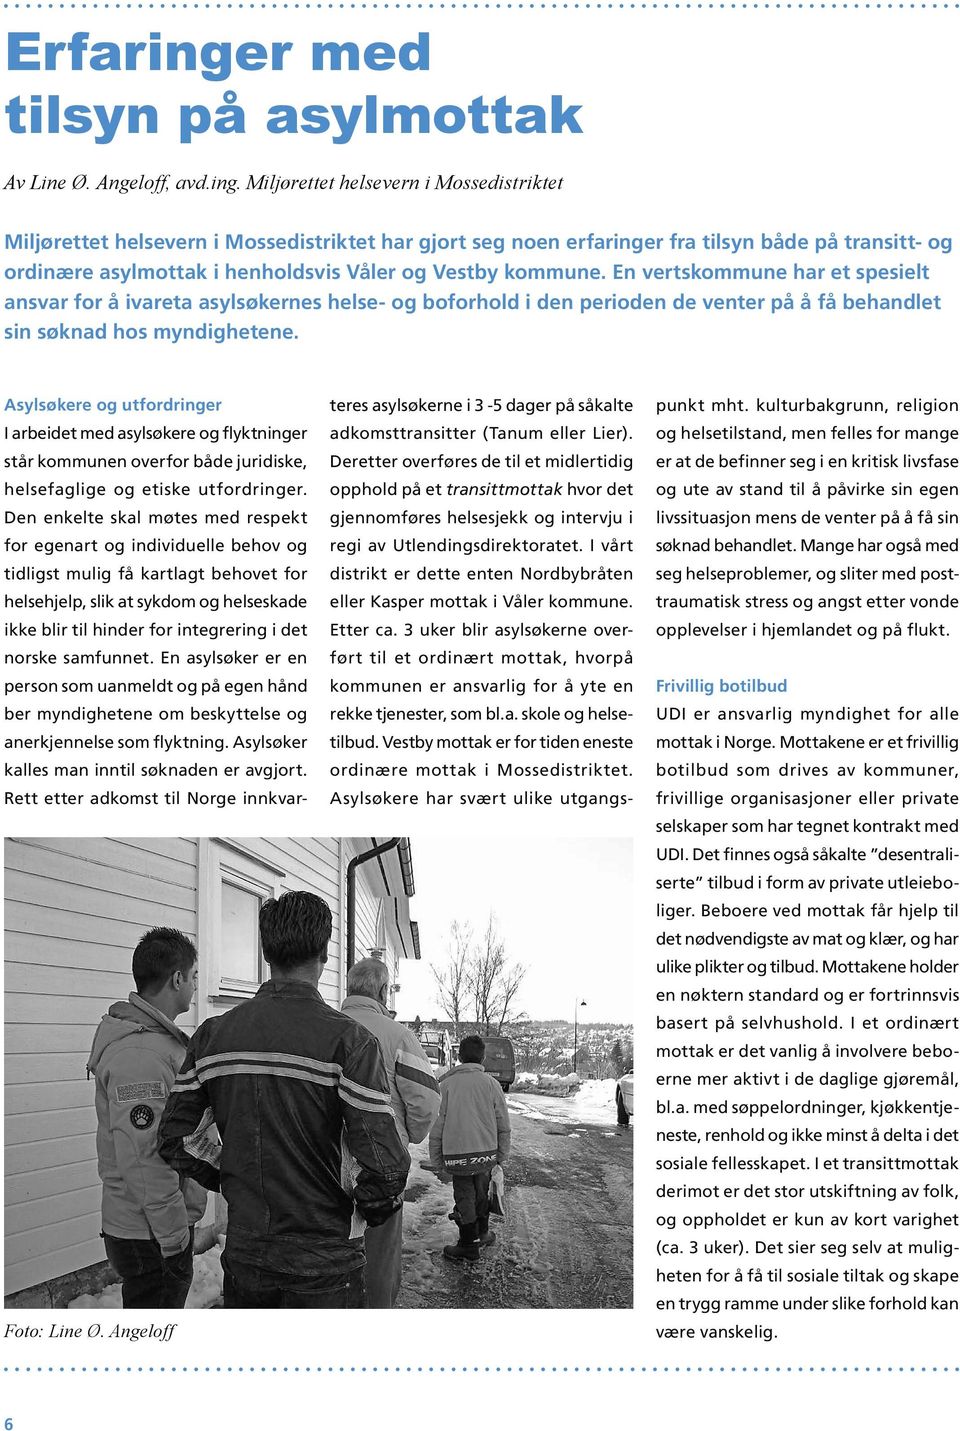 Miljørettet helsevern i Mossedistriktet Miljørettet helsevern i Mossedistriktet har gjort seg noen erfaringer fra tilsyn både på transitt- og ordinære asylmottak i henholdsvis Våler og Vestby kommune.